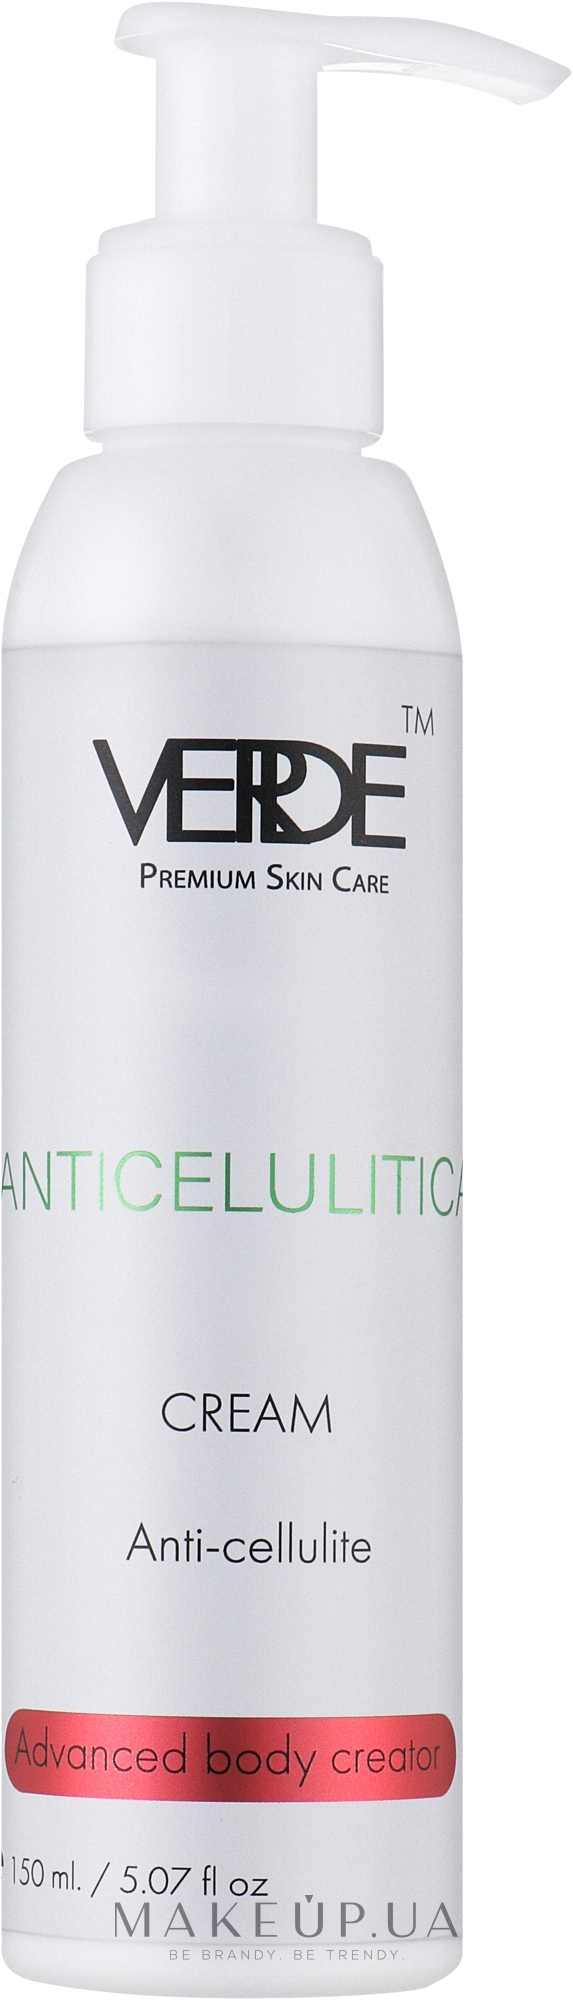 Антицелюлітний крем для ідеального силуету - Verde Anti-Cellulite Cream — фото 150ml